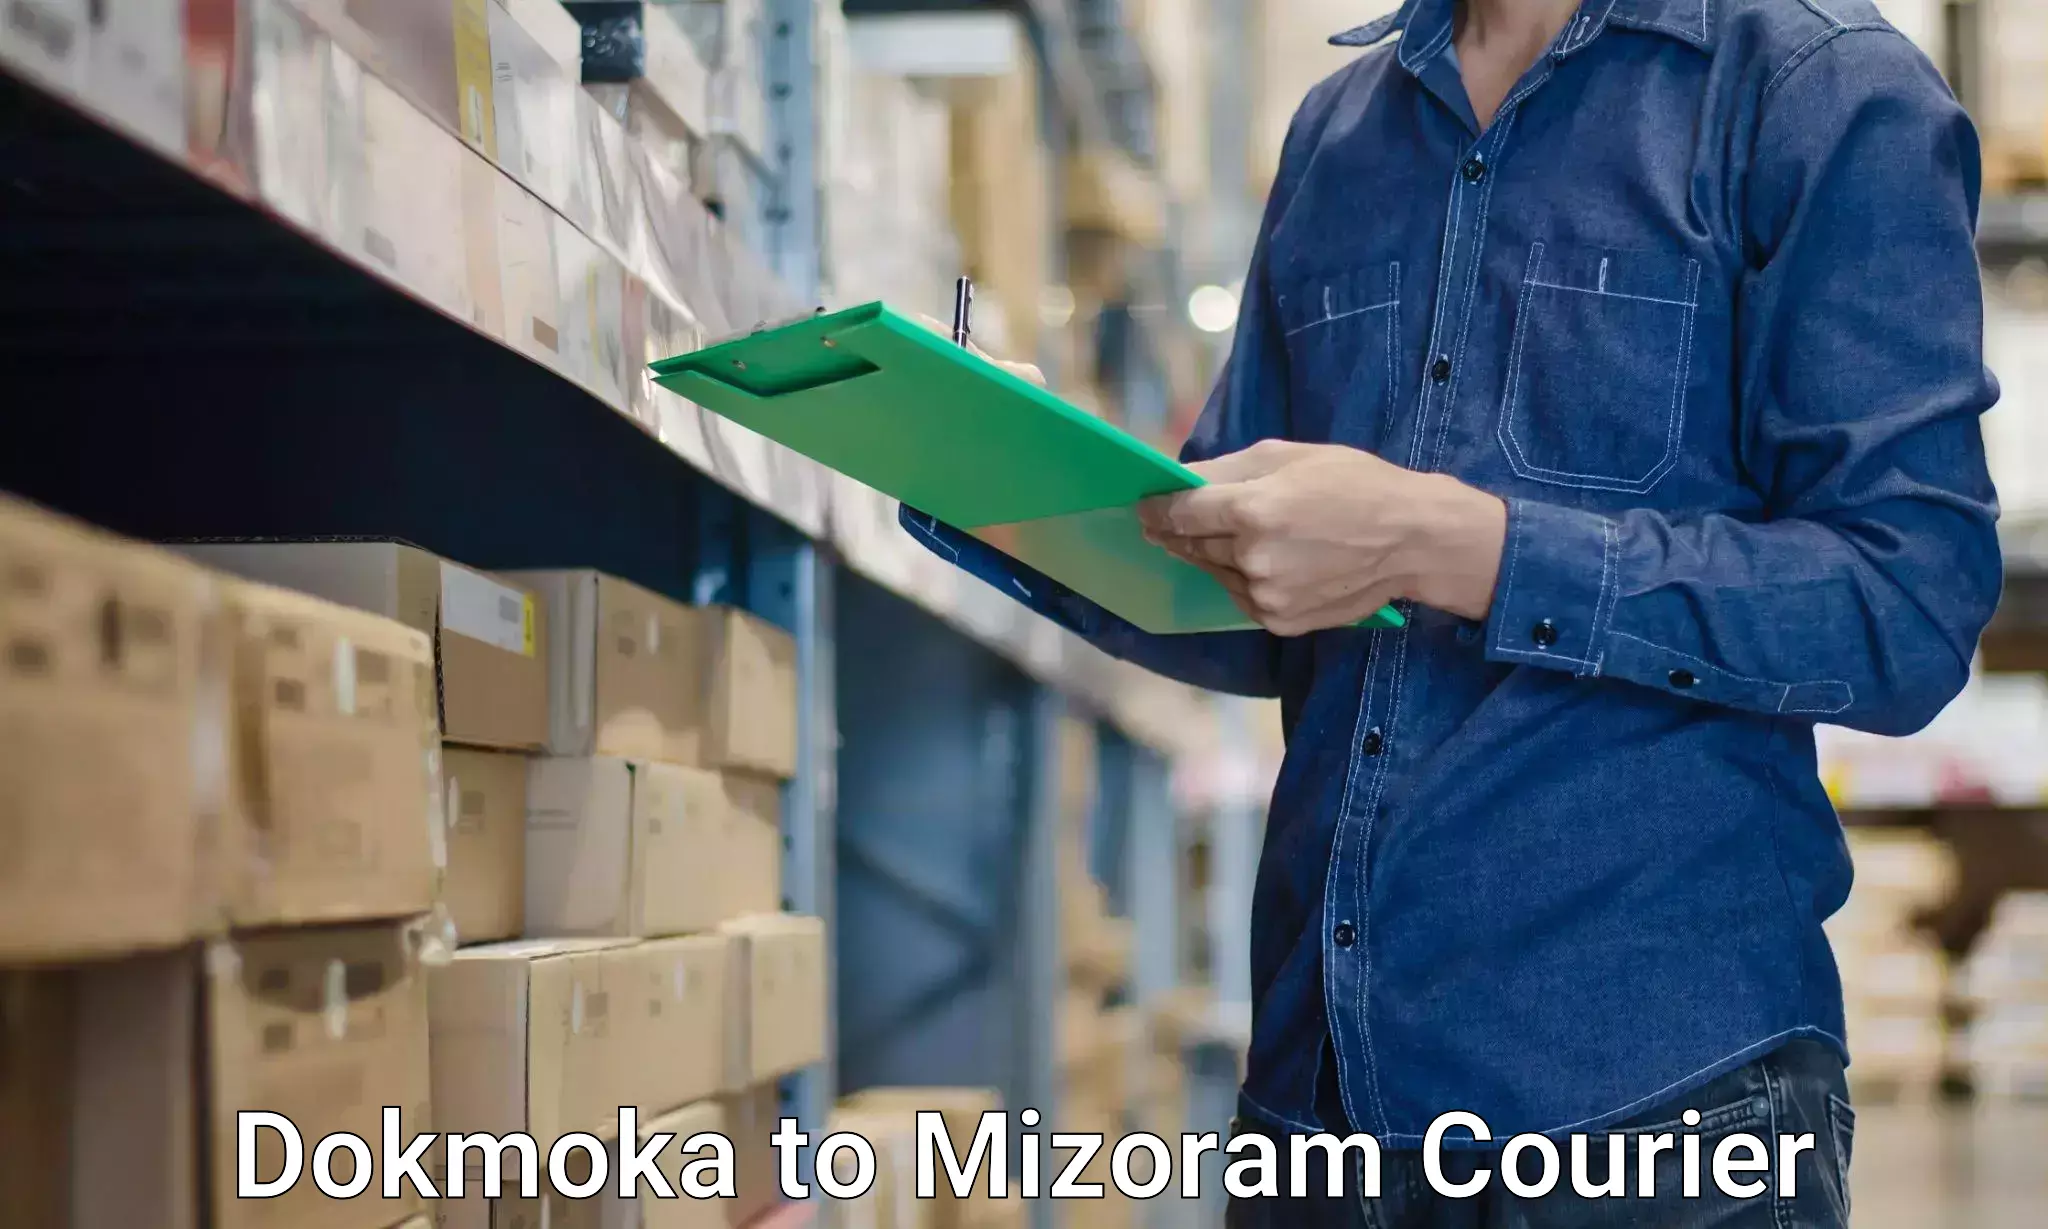 Quality moving and storage in Dokmoka to Mizoram